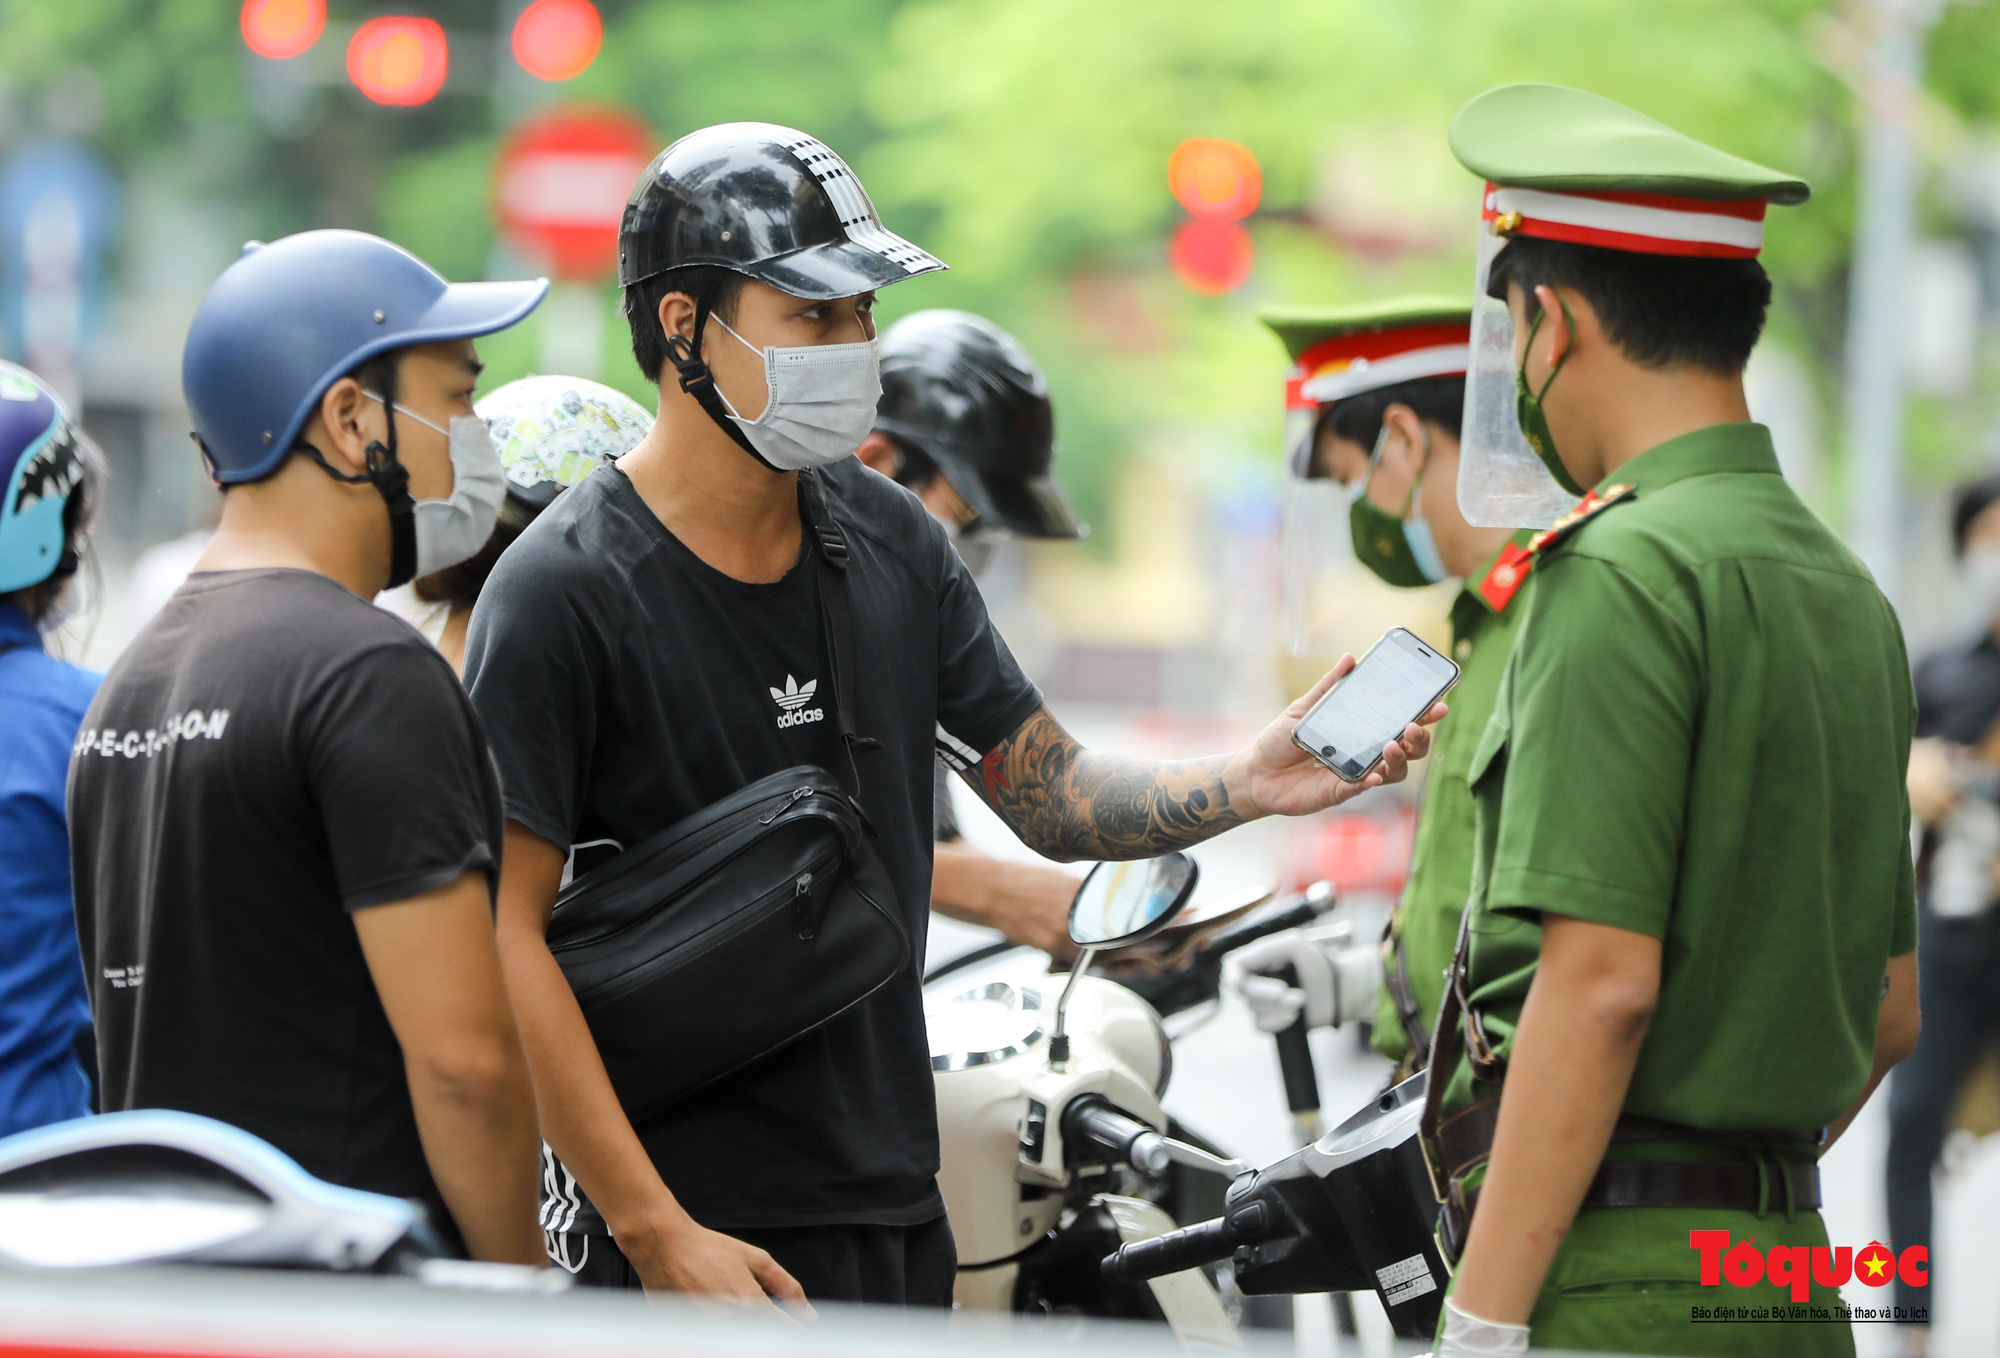 Công an quận Hoàn Kiếm triển khai tổ công tác đặc biệt kiểm soát giấy đi đường, nhiều trường hợp quay đầu bỏ chạy - Ảnh 8.